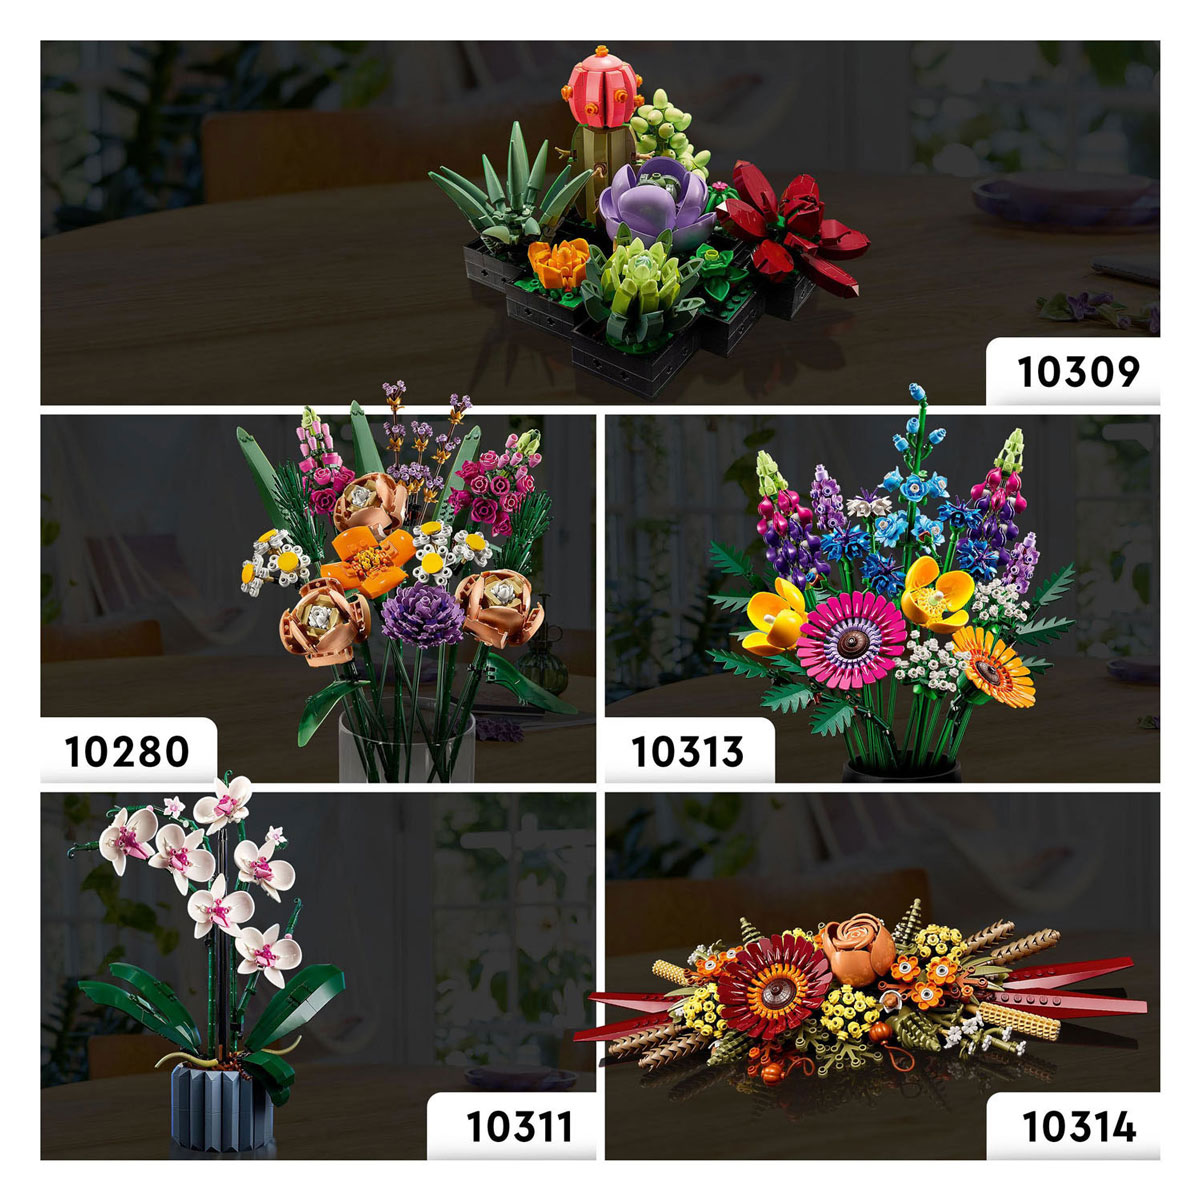 LEGO ICONS 10314 Arrangement floral avec fleurs séchées